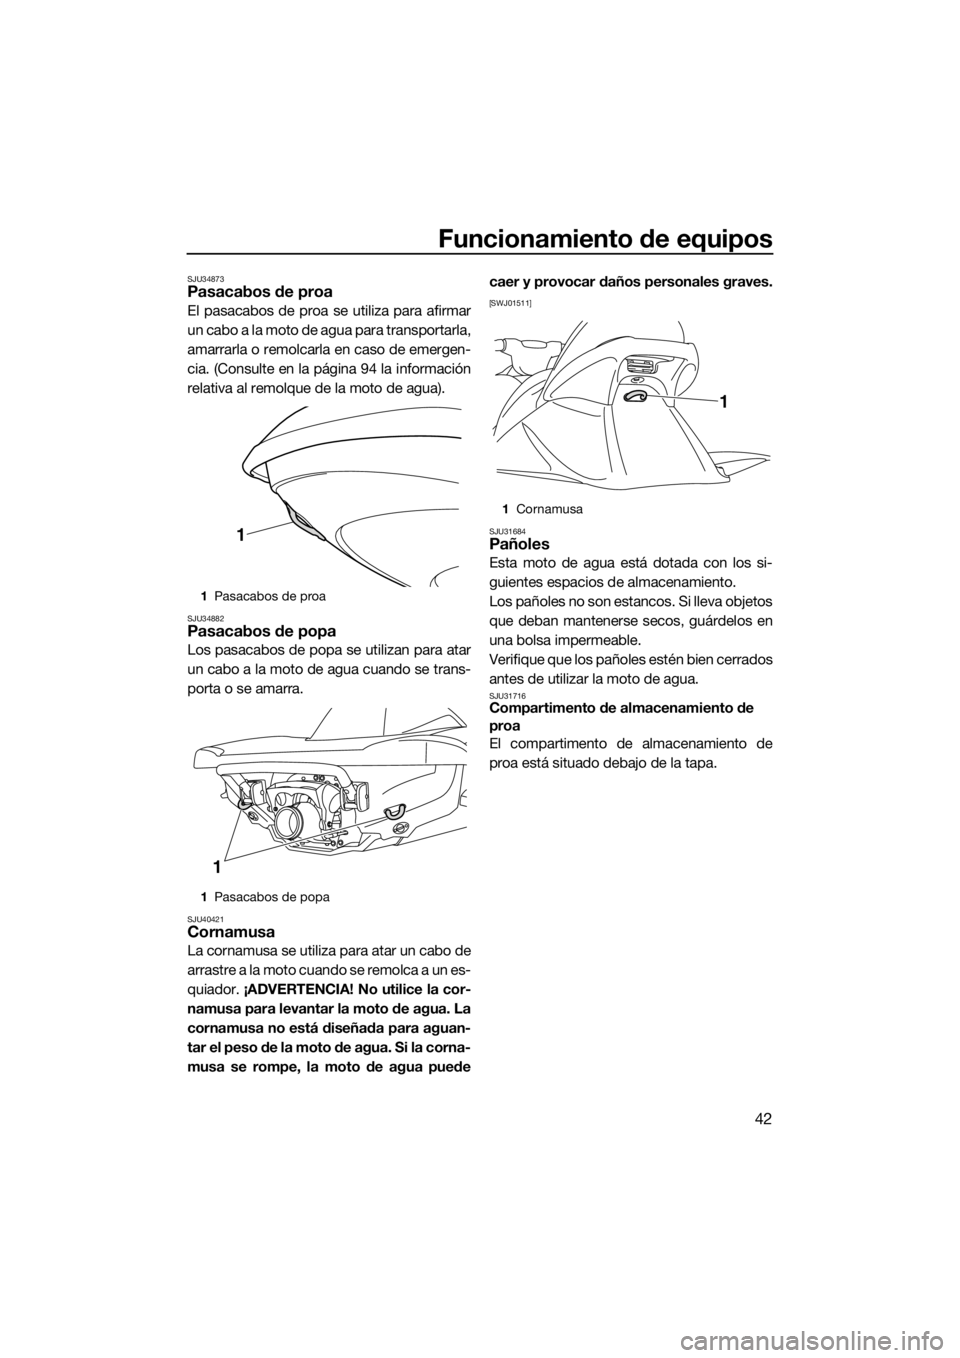 YAMAHA VX 2014  Manuale de Empleo (in Spanish) Funcionamiento de equipos
42
SJU34873Pasacabos de proa
El pasacabos de proa se utiliza para afirmar
un cabo a la moto de agua para transportarla,
amarrarla o remolcarla en caso de emergen-
cia. (Consu